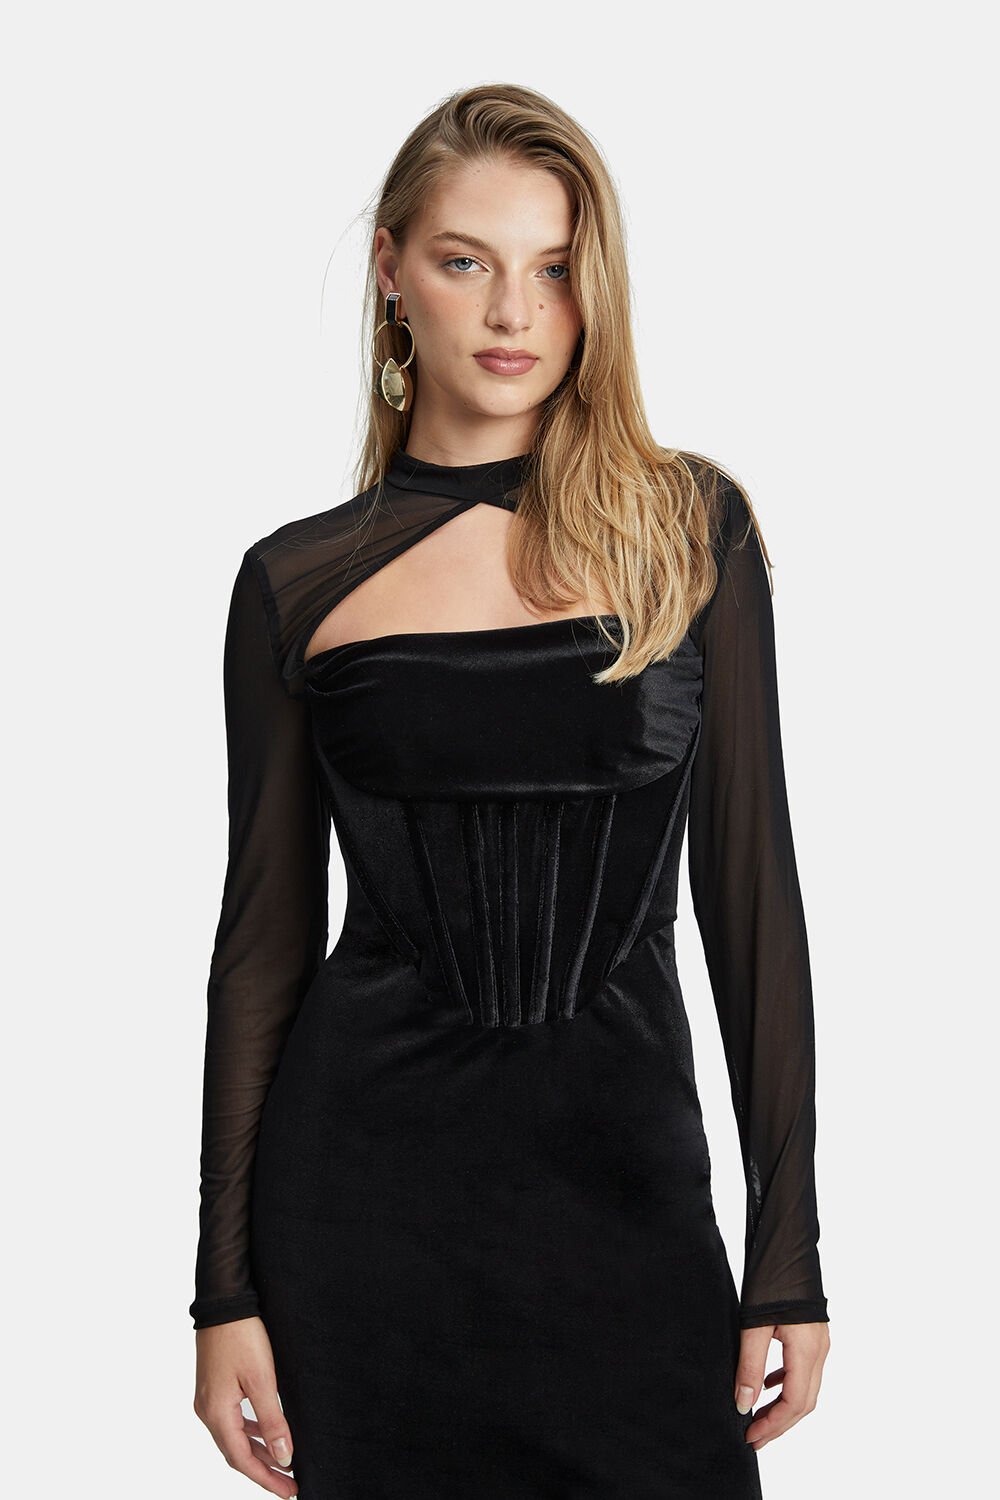 Castila Corset Dress - Black - SHOPJAUS - JAUS